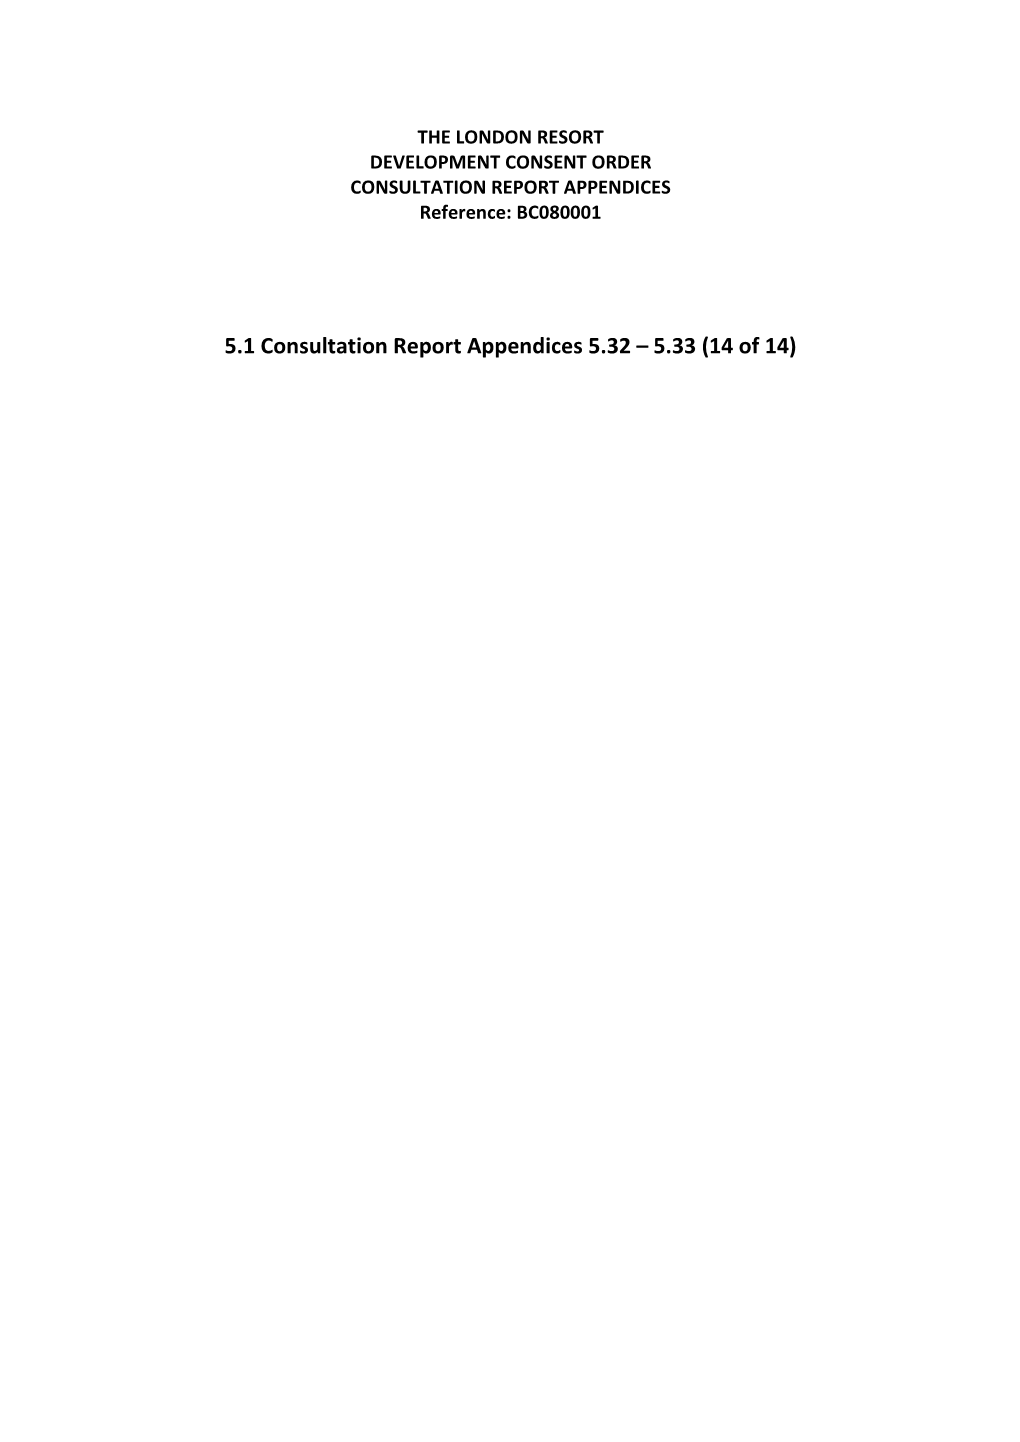 5.1 Consultation Report Appendices 5.32 – 5.33 (14 of 14)